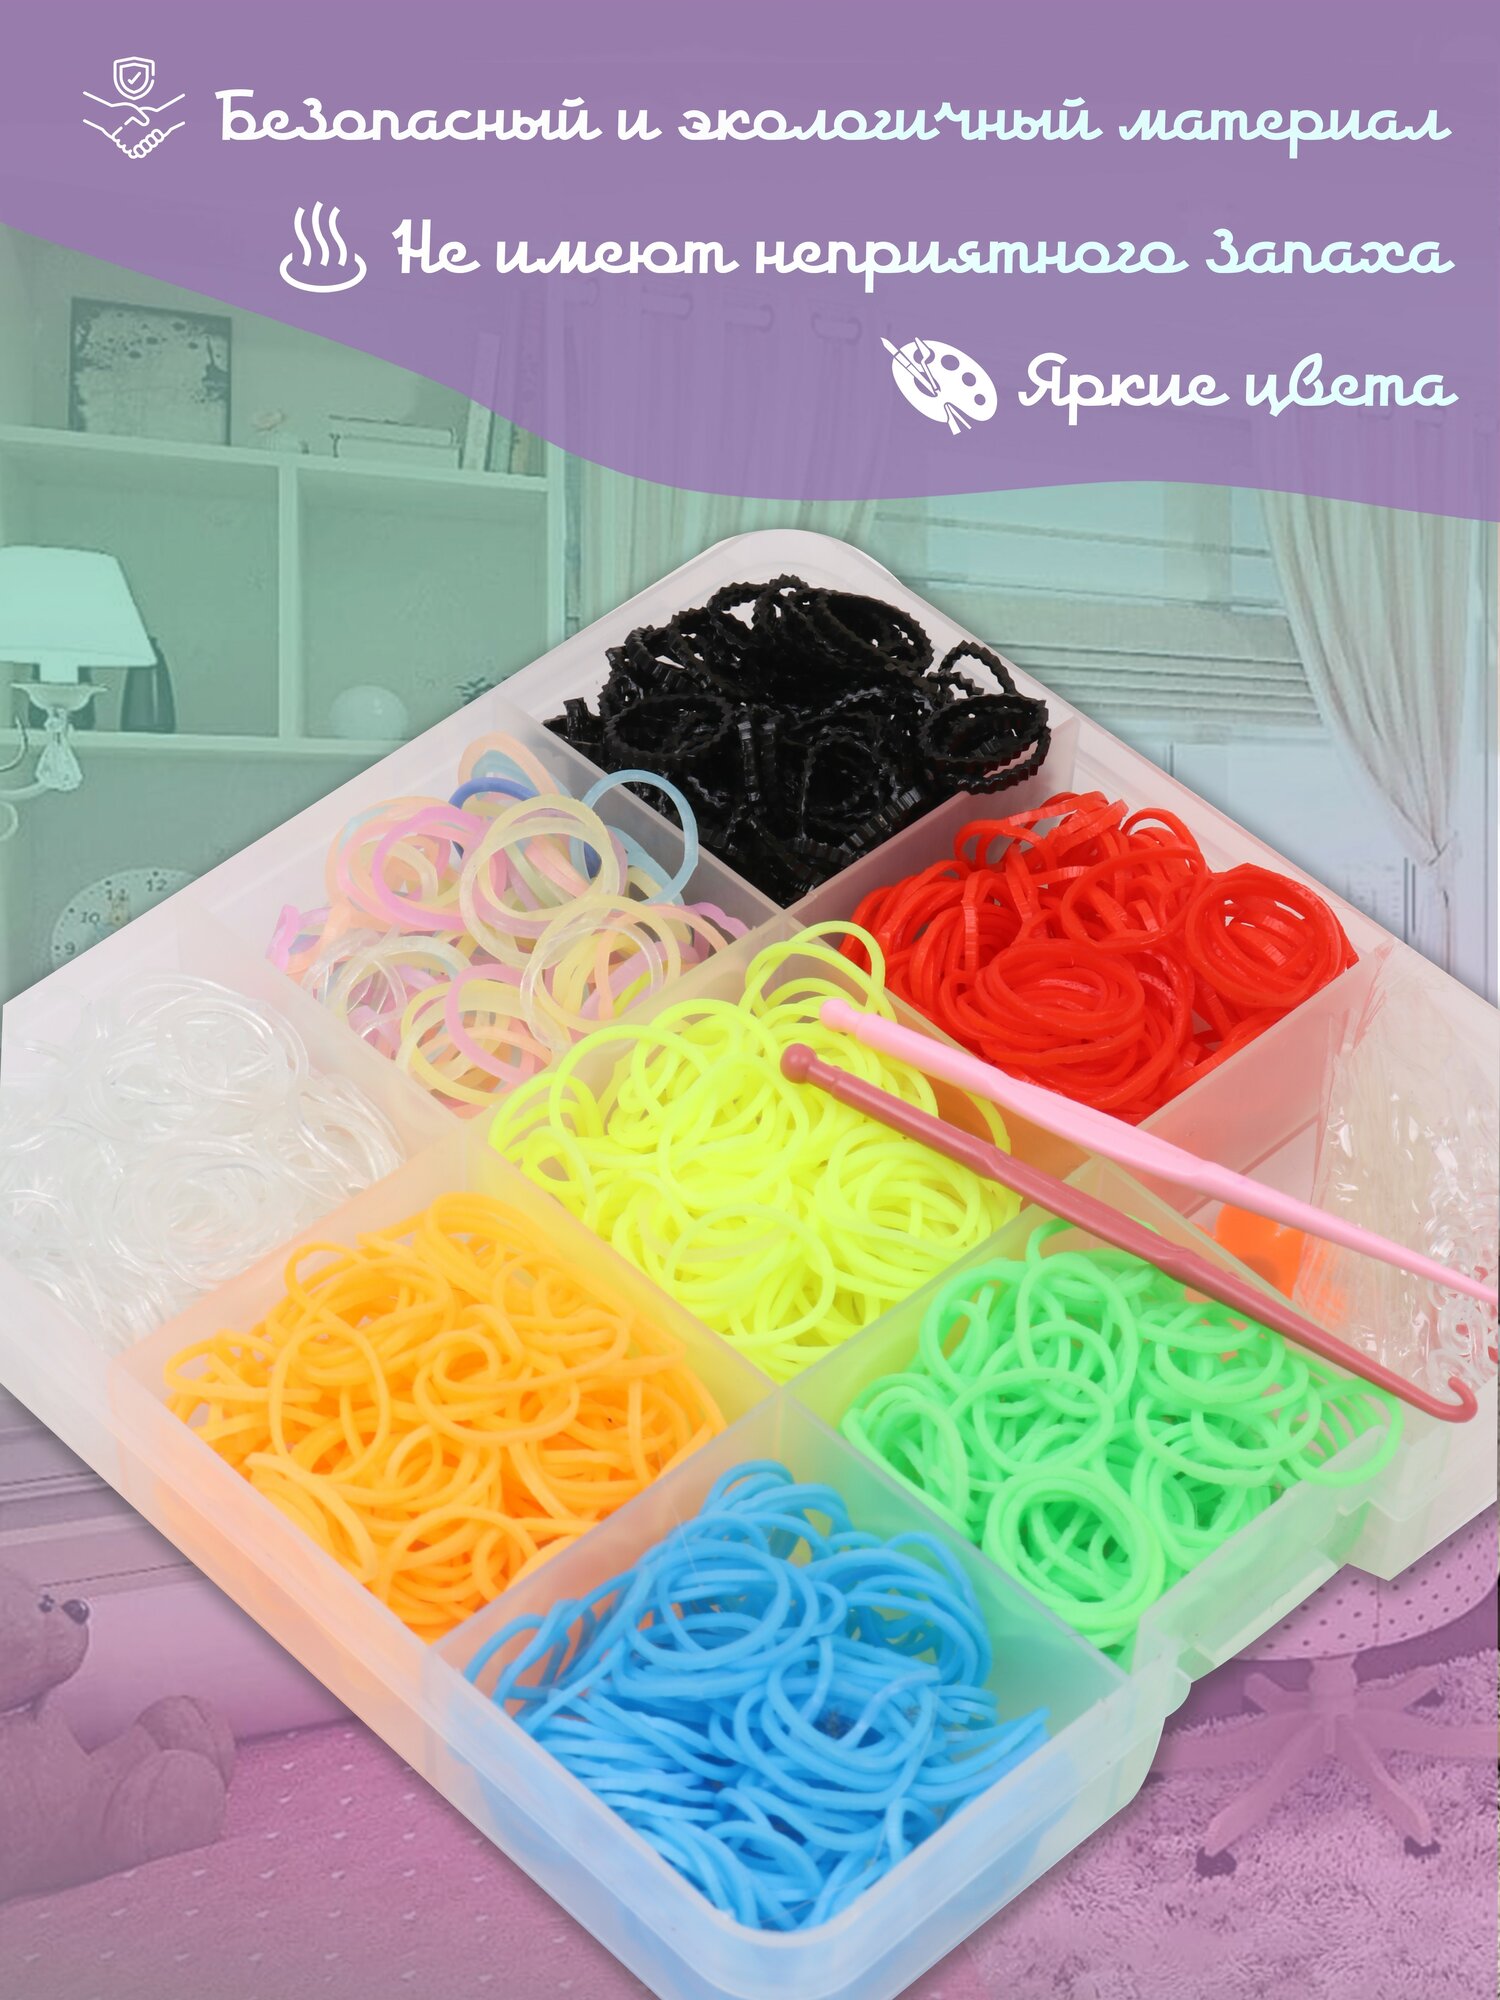 Резинки для плетения 1000 штук 8 цветов, набор резинок для плетения браслетов и изготовления украшений